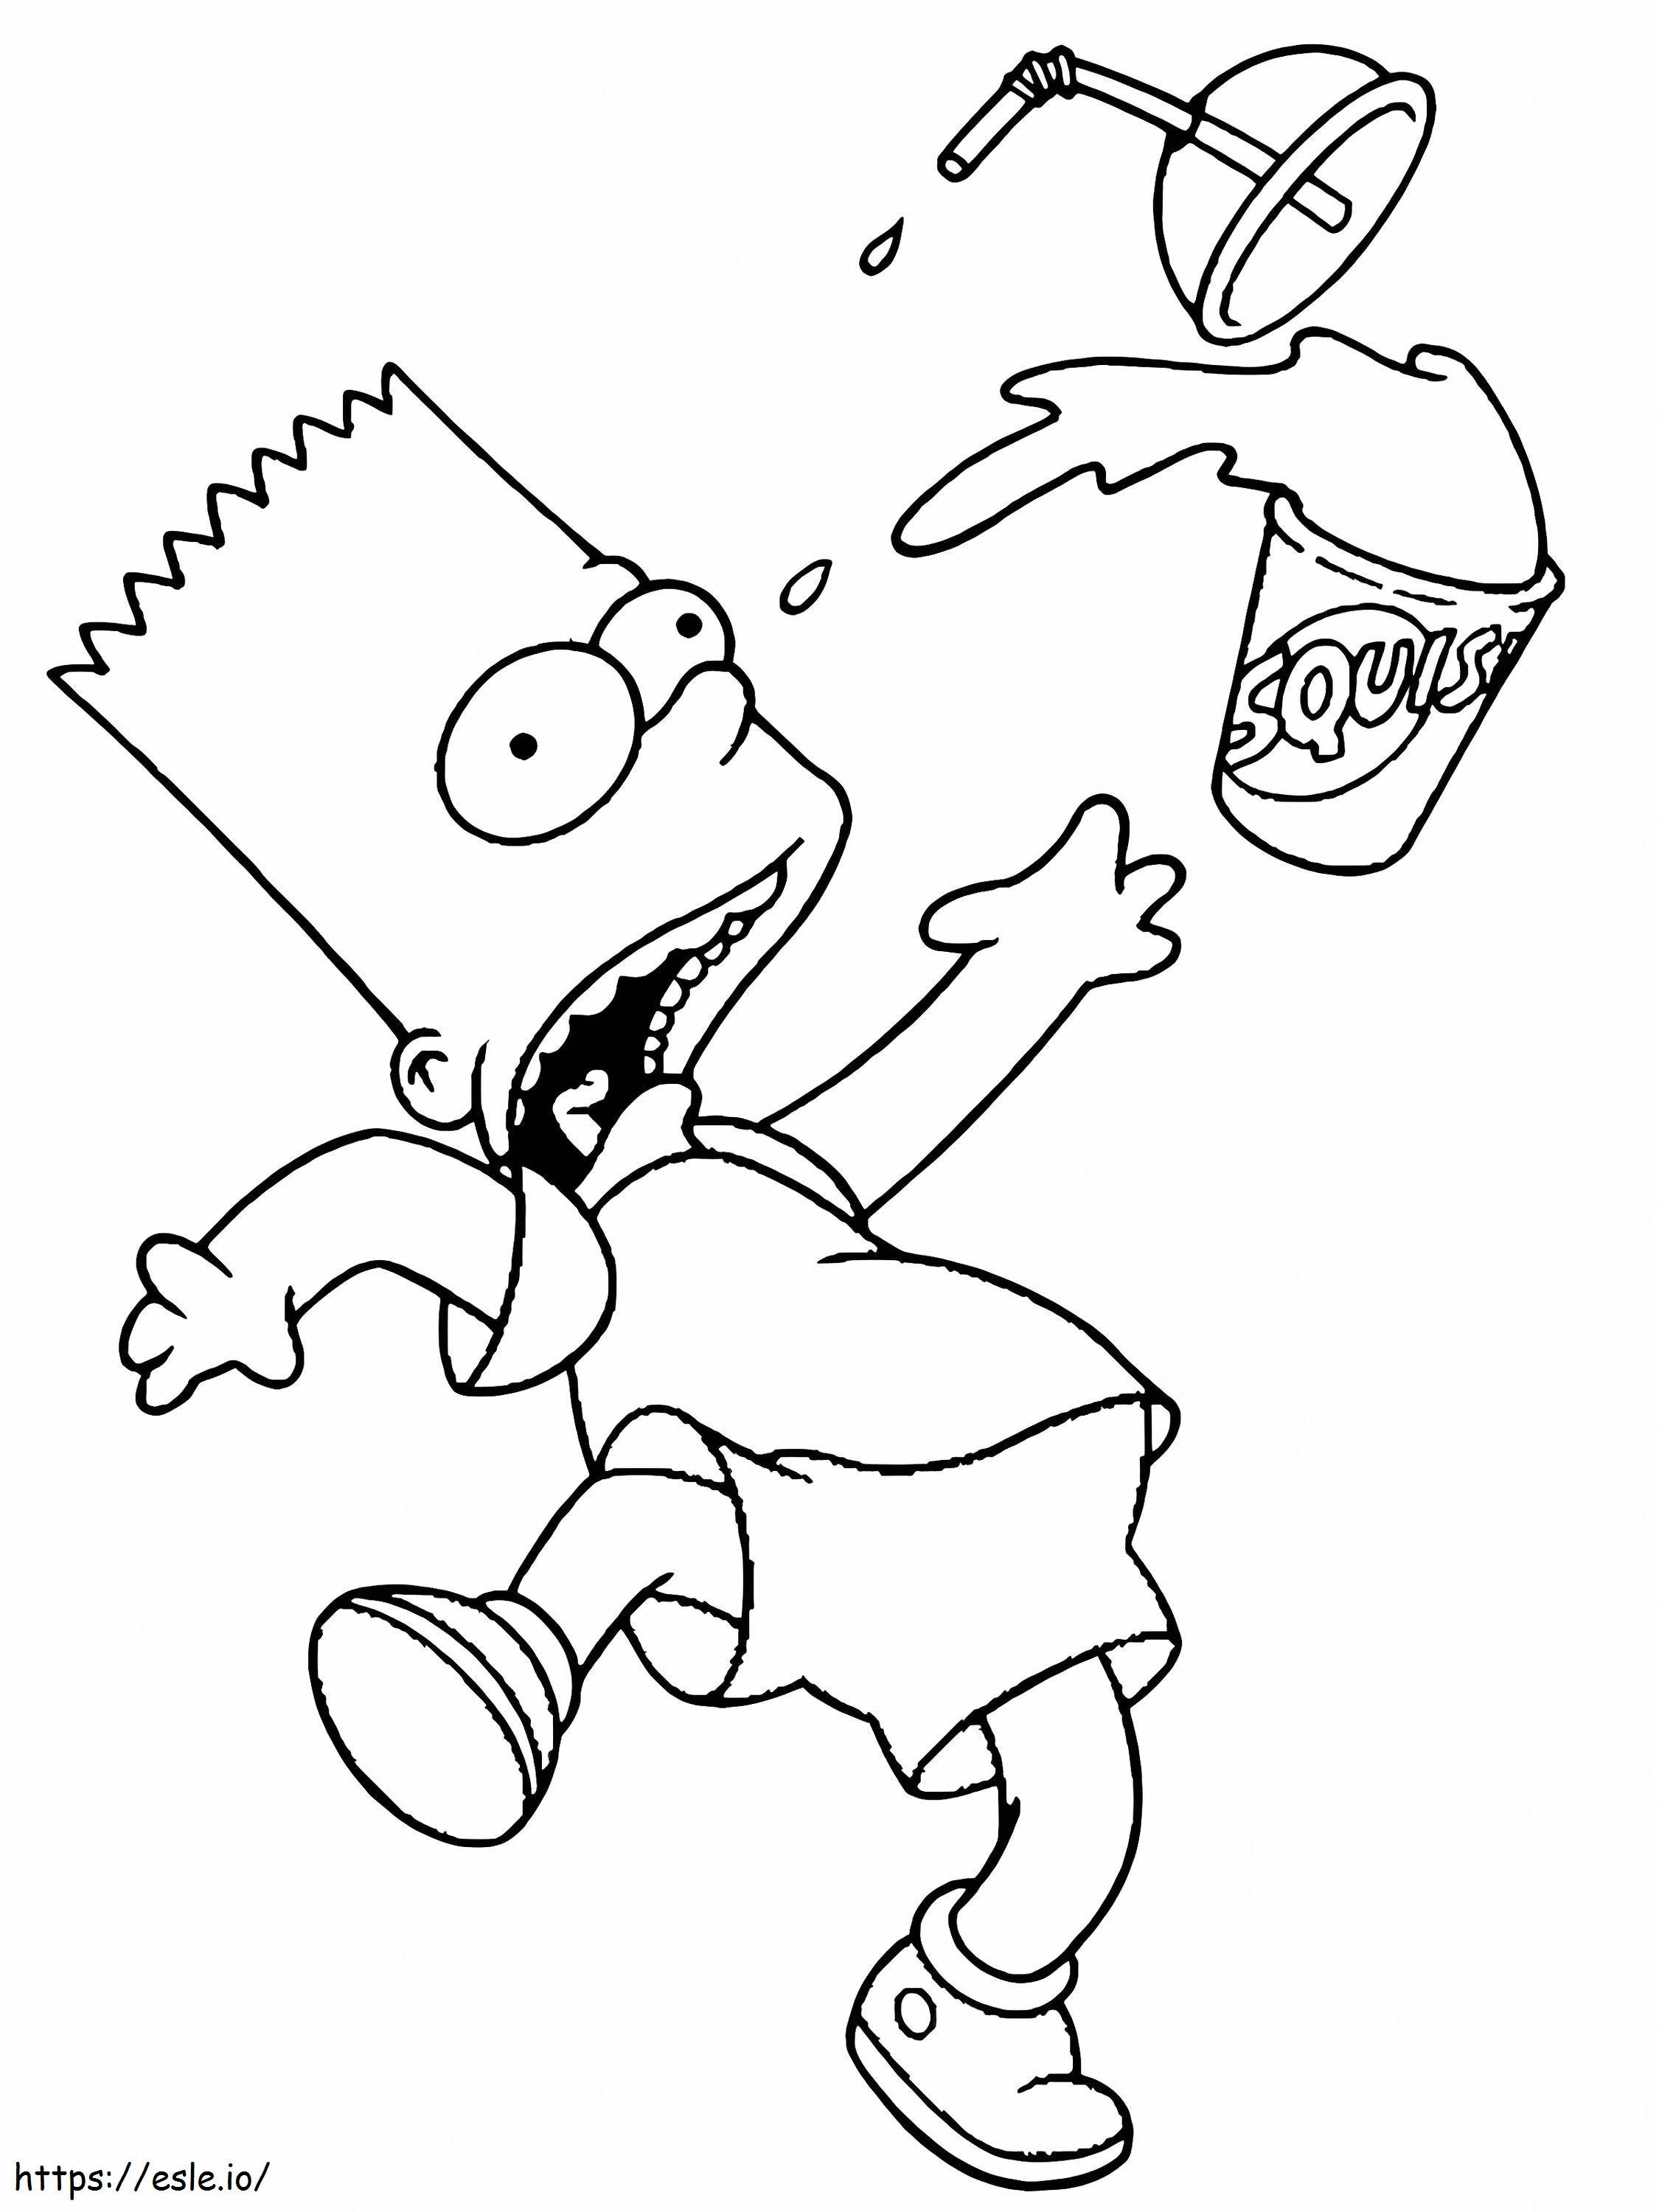 Bart Simpson'dan korkun boyama